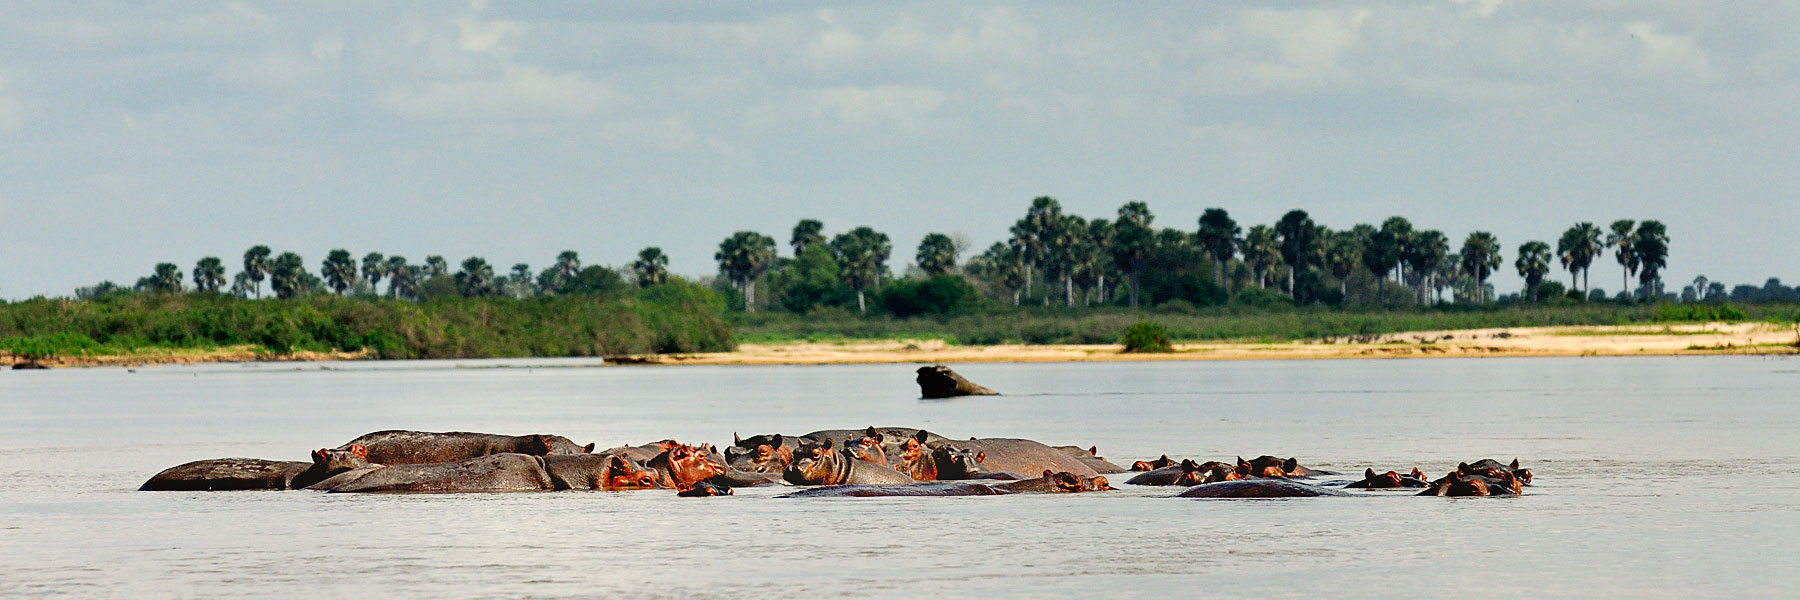 La rivière Rufiji-Selous-Tanzanie